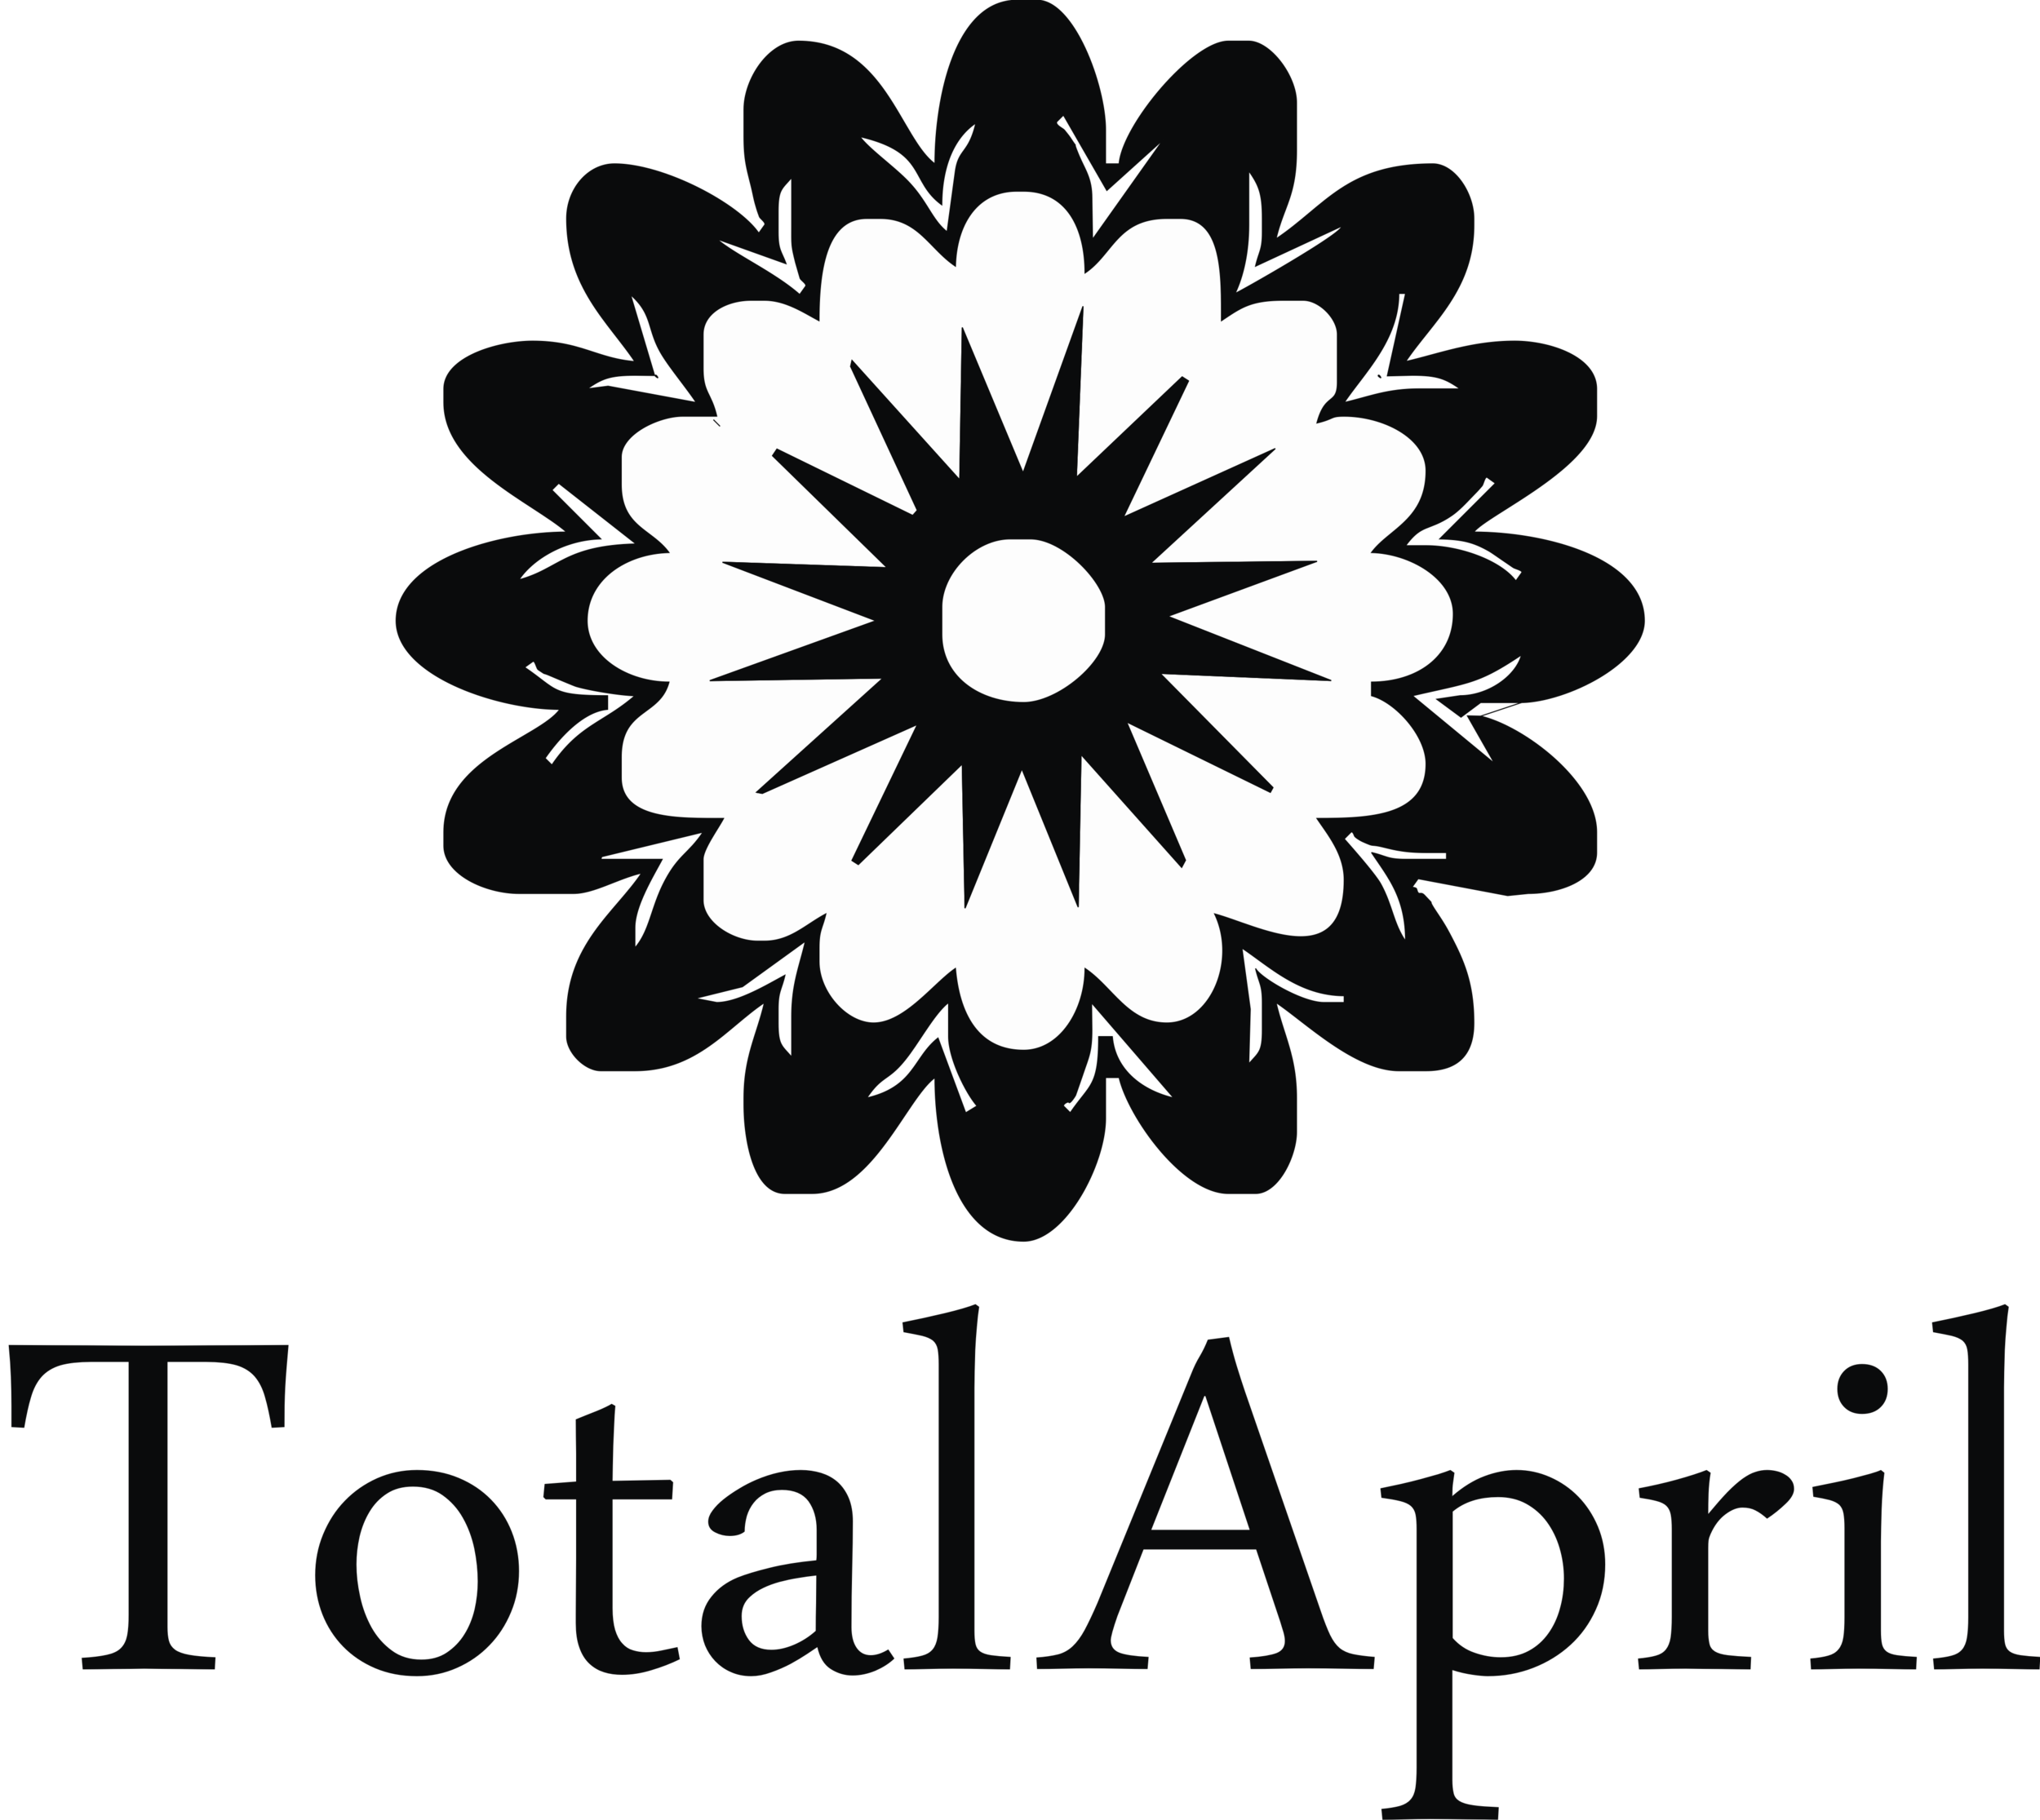 Total April